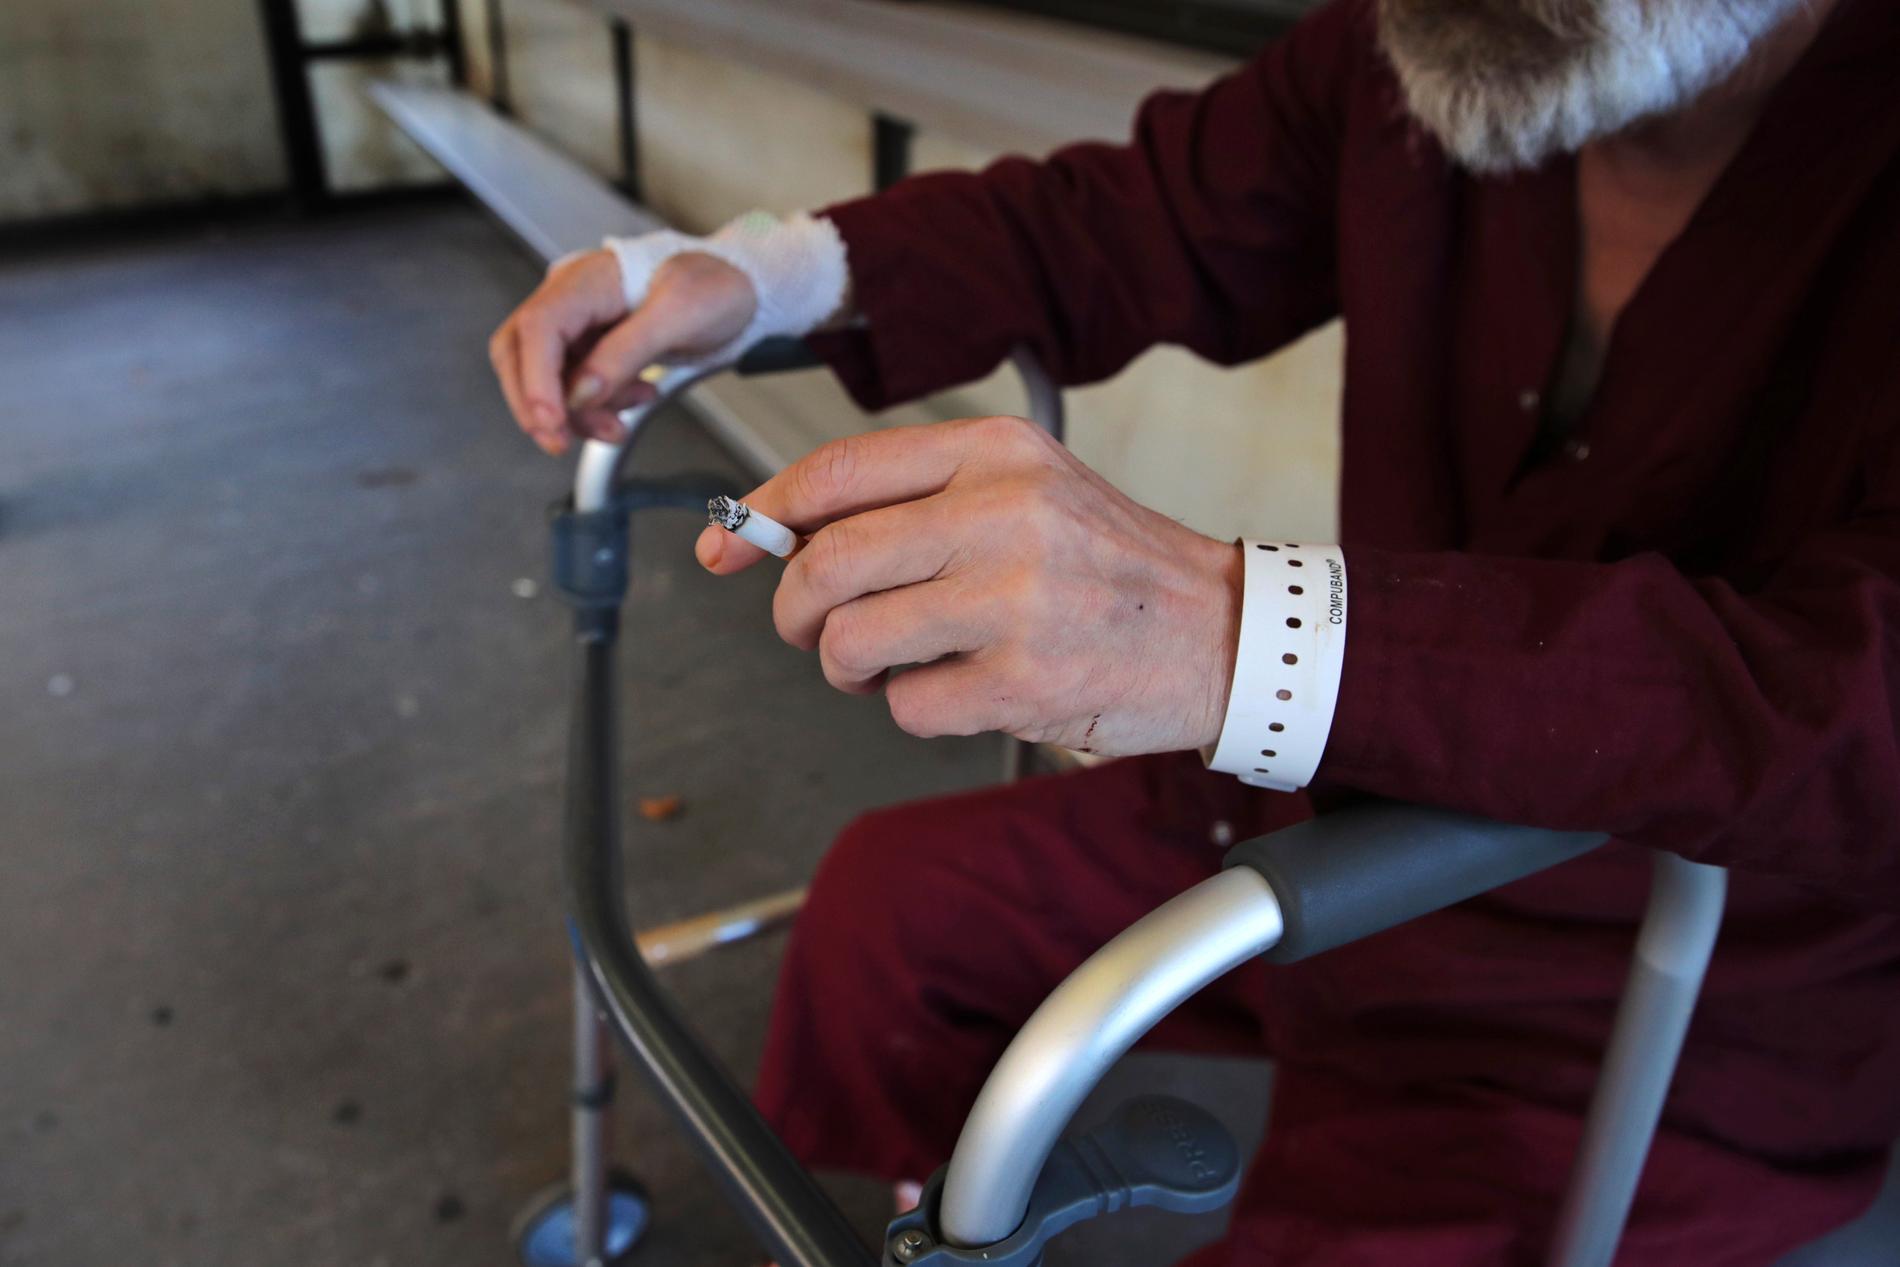 En äldre man vilar sig på rullatorn medan han tar en cigarett på ett sjukhus i Boston i USA. Sjukhuset har nyligen beslutat att förbjuda rökning på sjukhusområdet. De senaste 20 åren har många länder i världen infört starkare kontroll av tobak, delvis på grund av WHO:s ramkonvention för tobakskontroll.